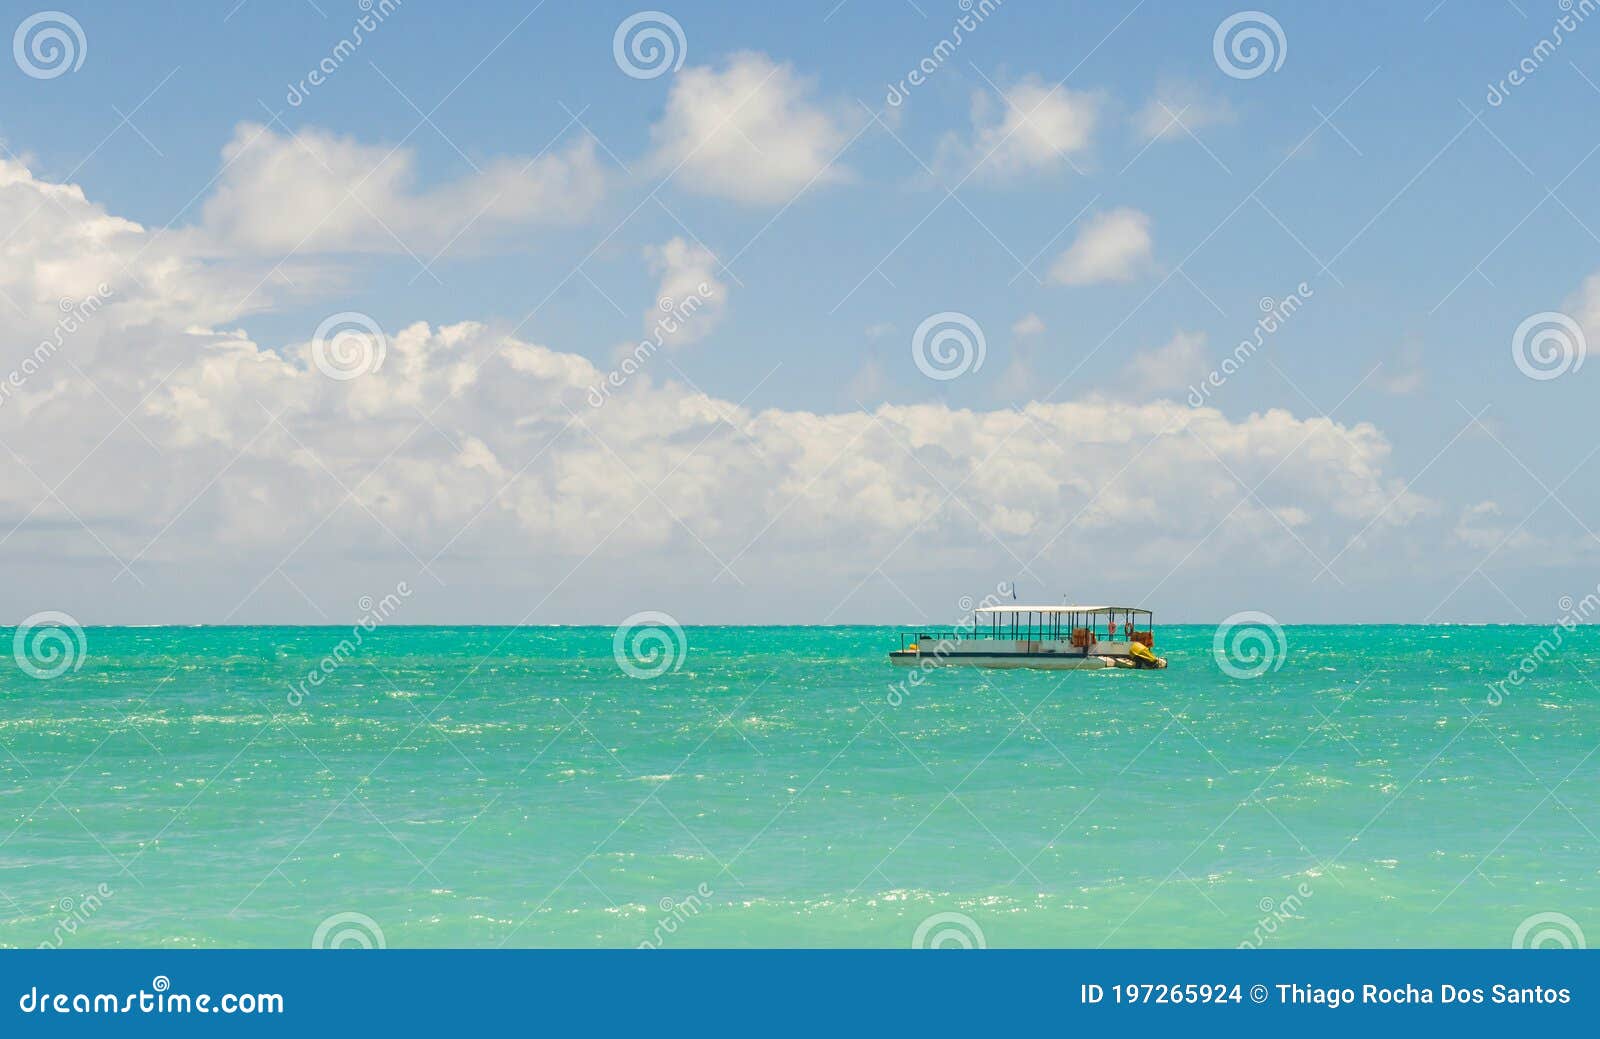 linda imagem de barco navegando em um paraÃÂ­so tropical.beautifu